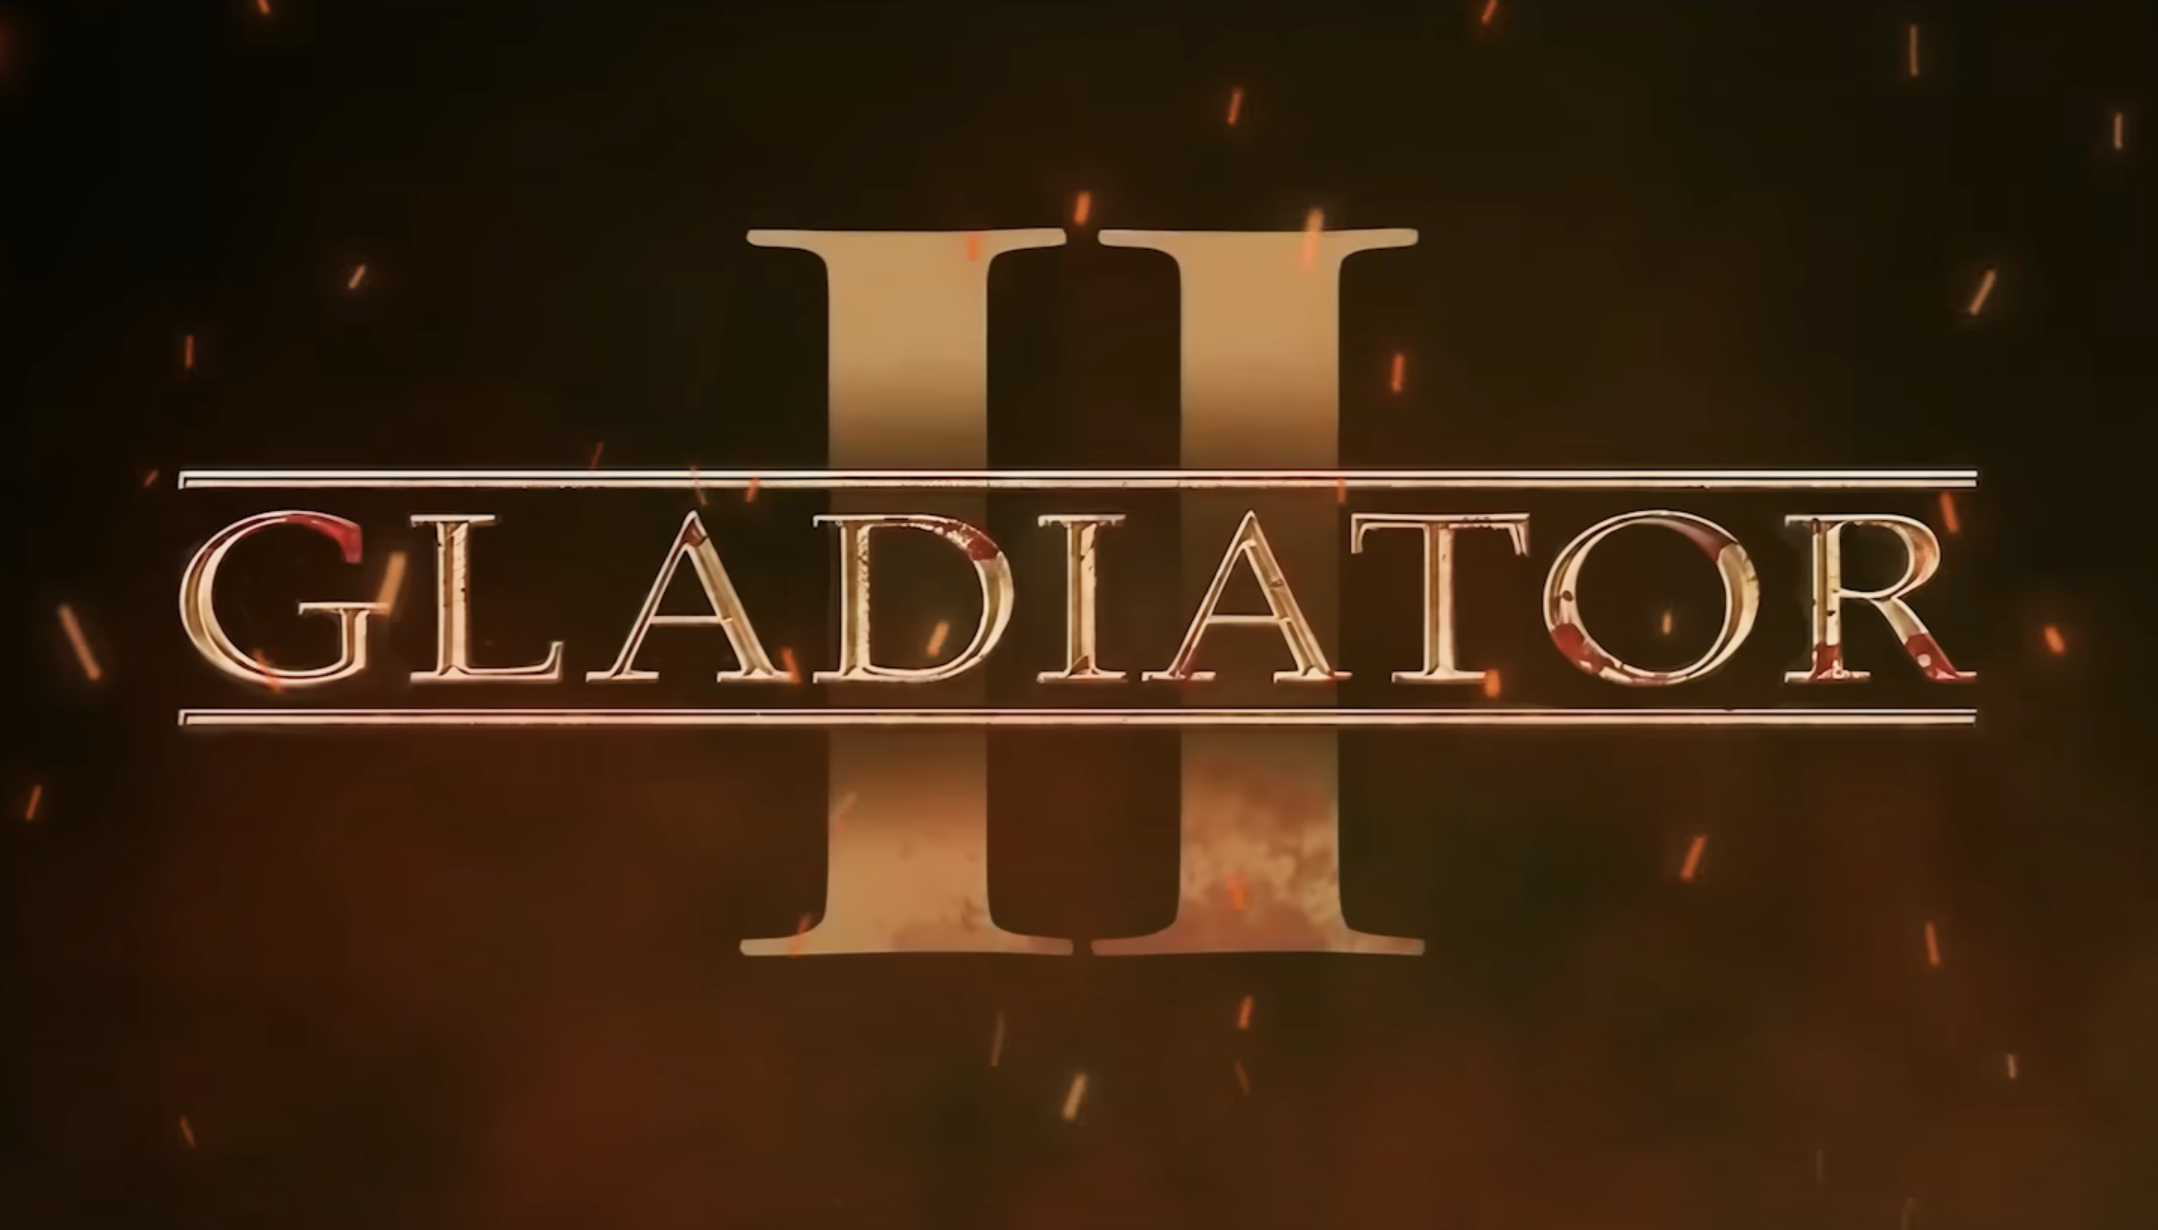 Des scènes de combats épiques, Gladiator 2 a conquis le CinemaCon de Las Vegas (trailer)